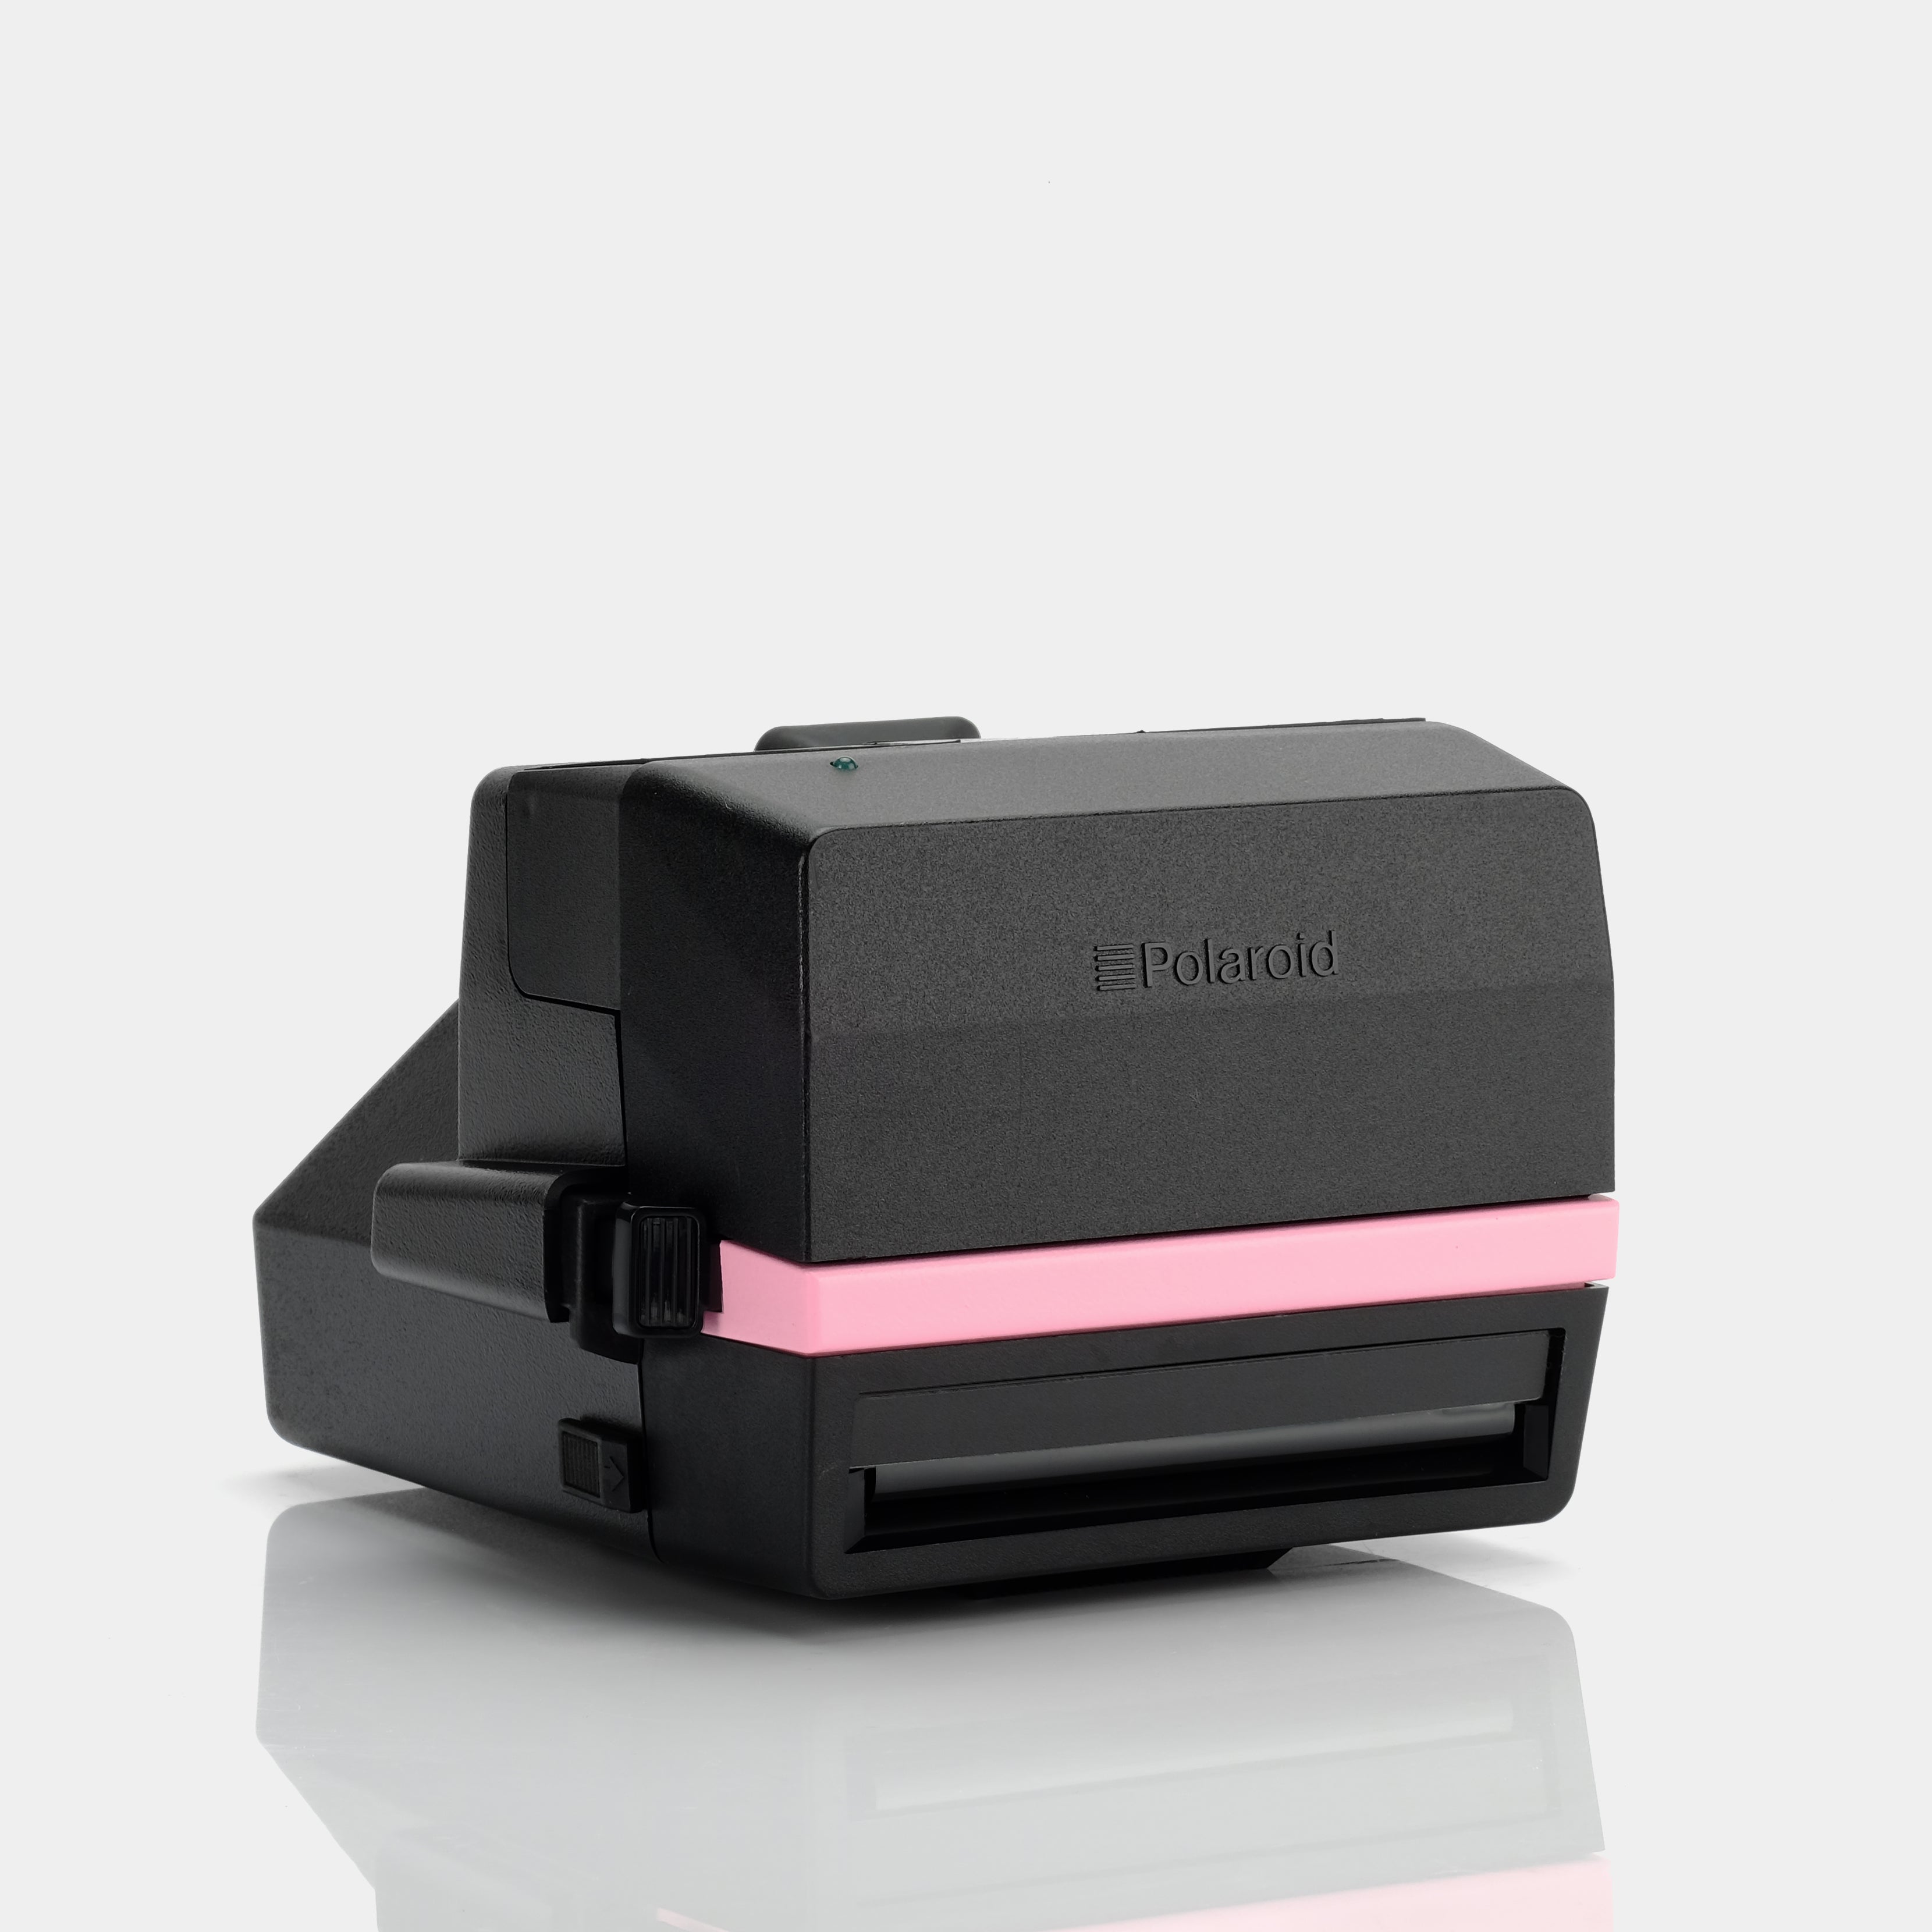 Polaroid 600 Bubblegum Pink Instant Film Camera